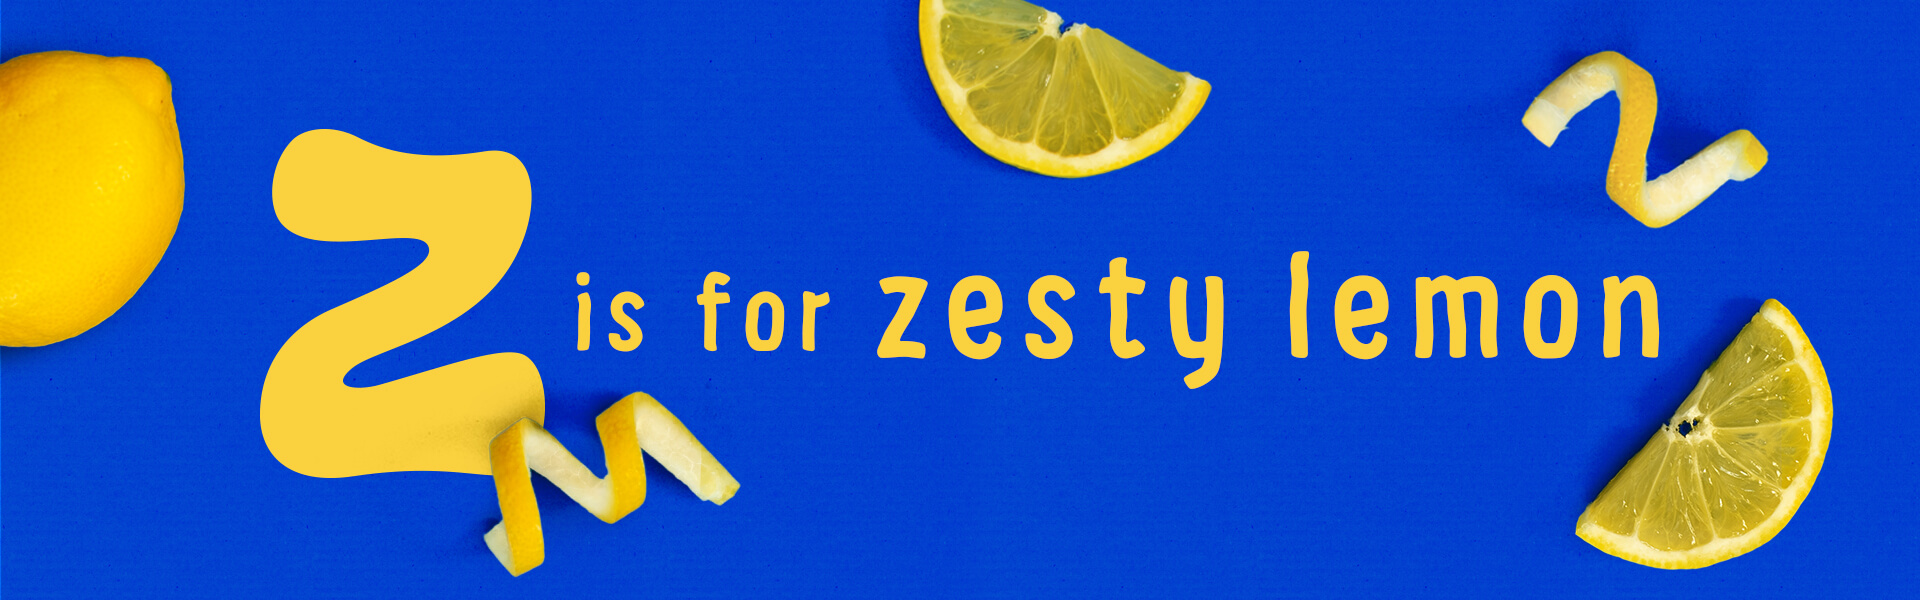 Organix z is for zesty lemon